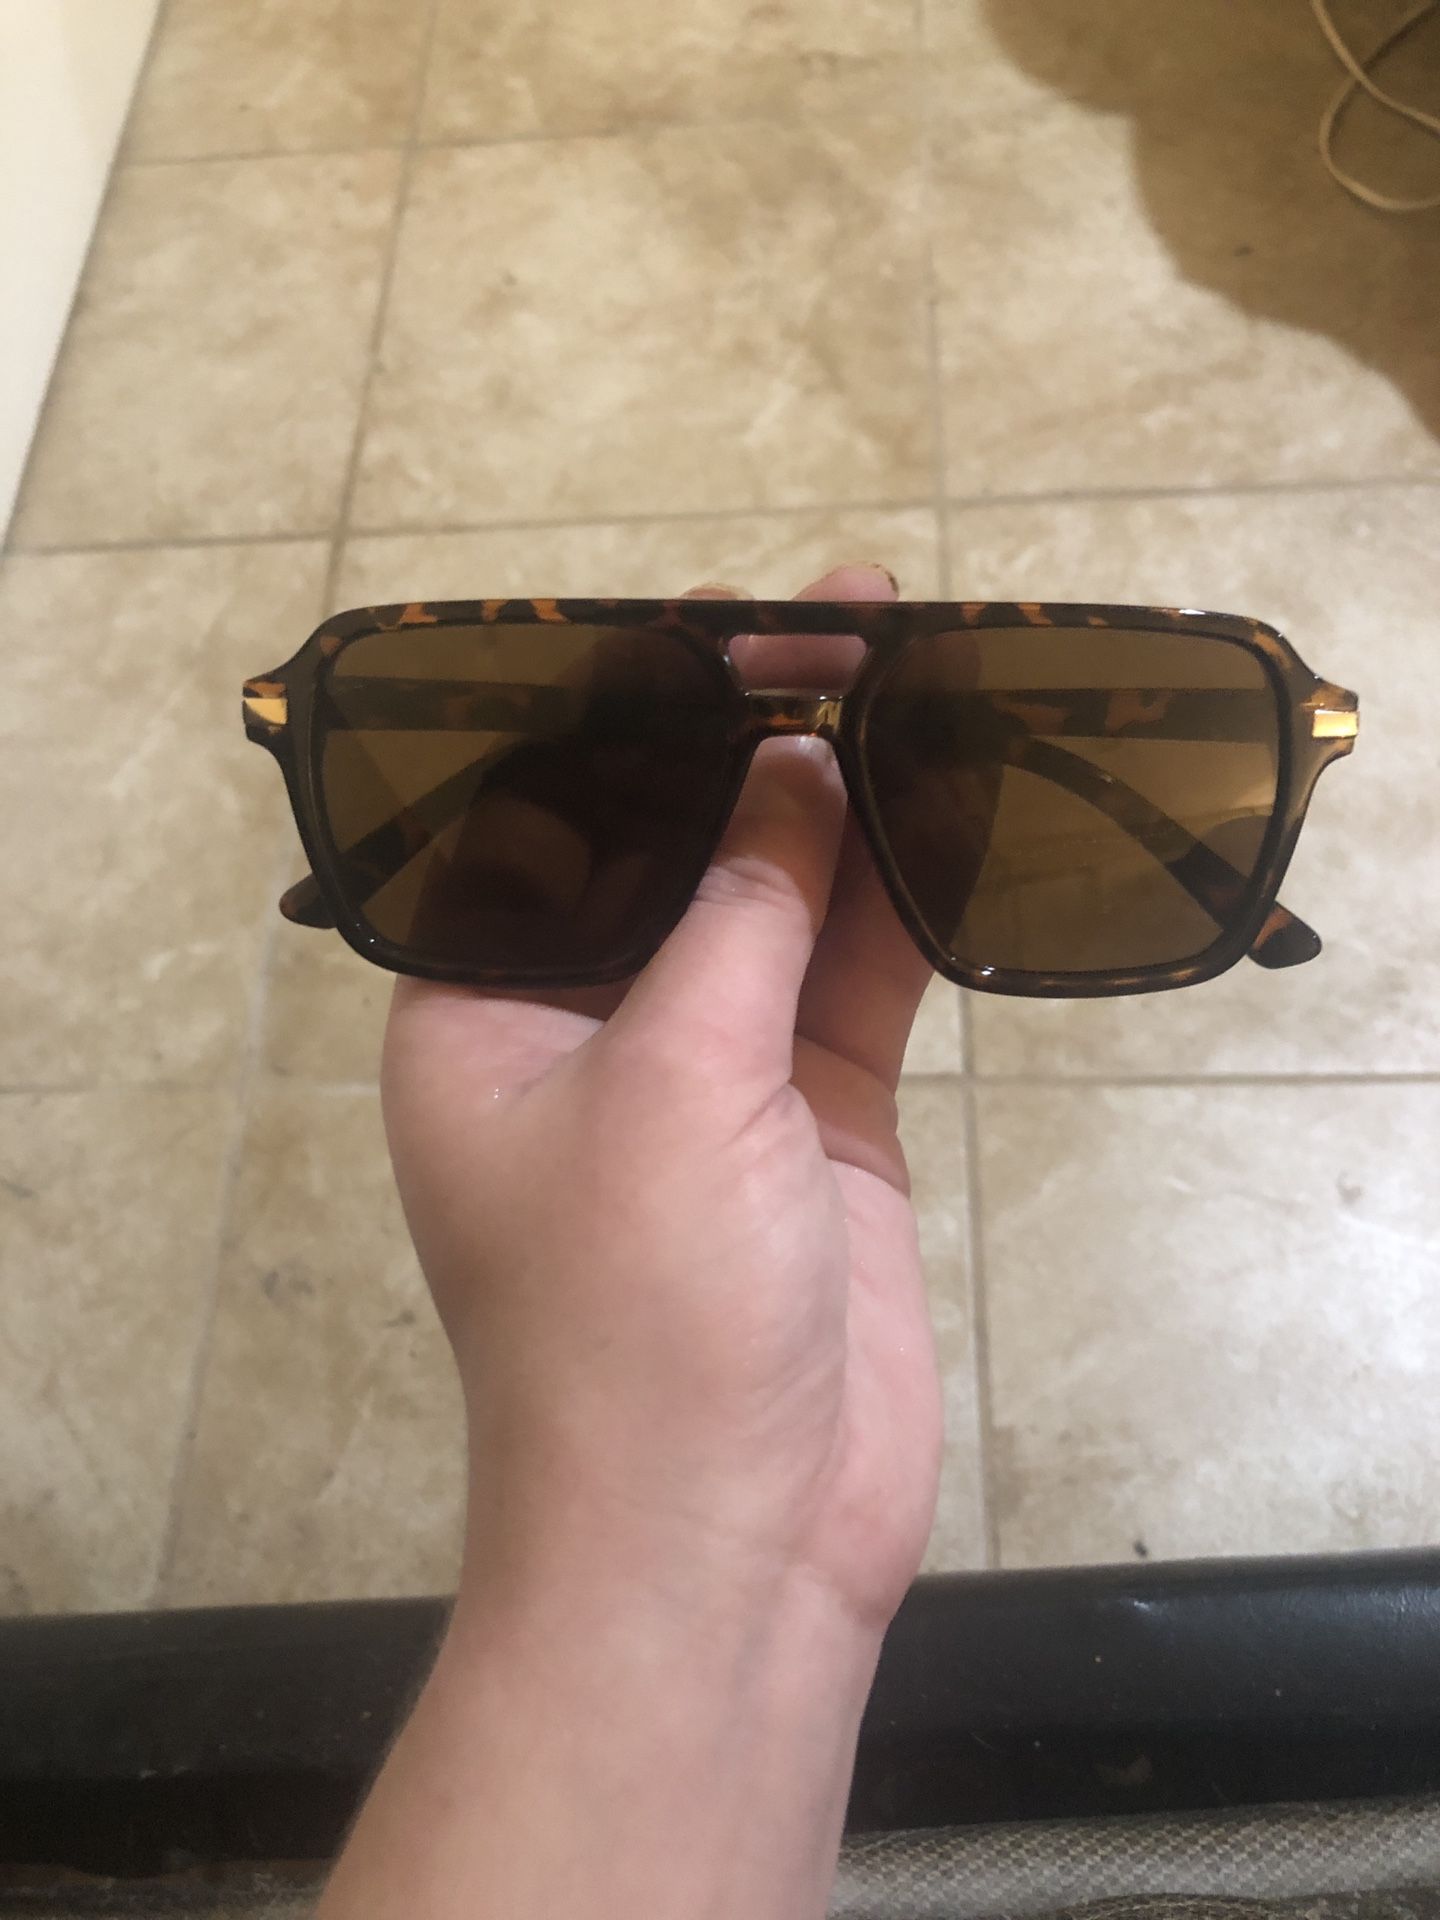 NWOT Brown Sunglasses 